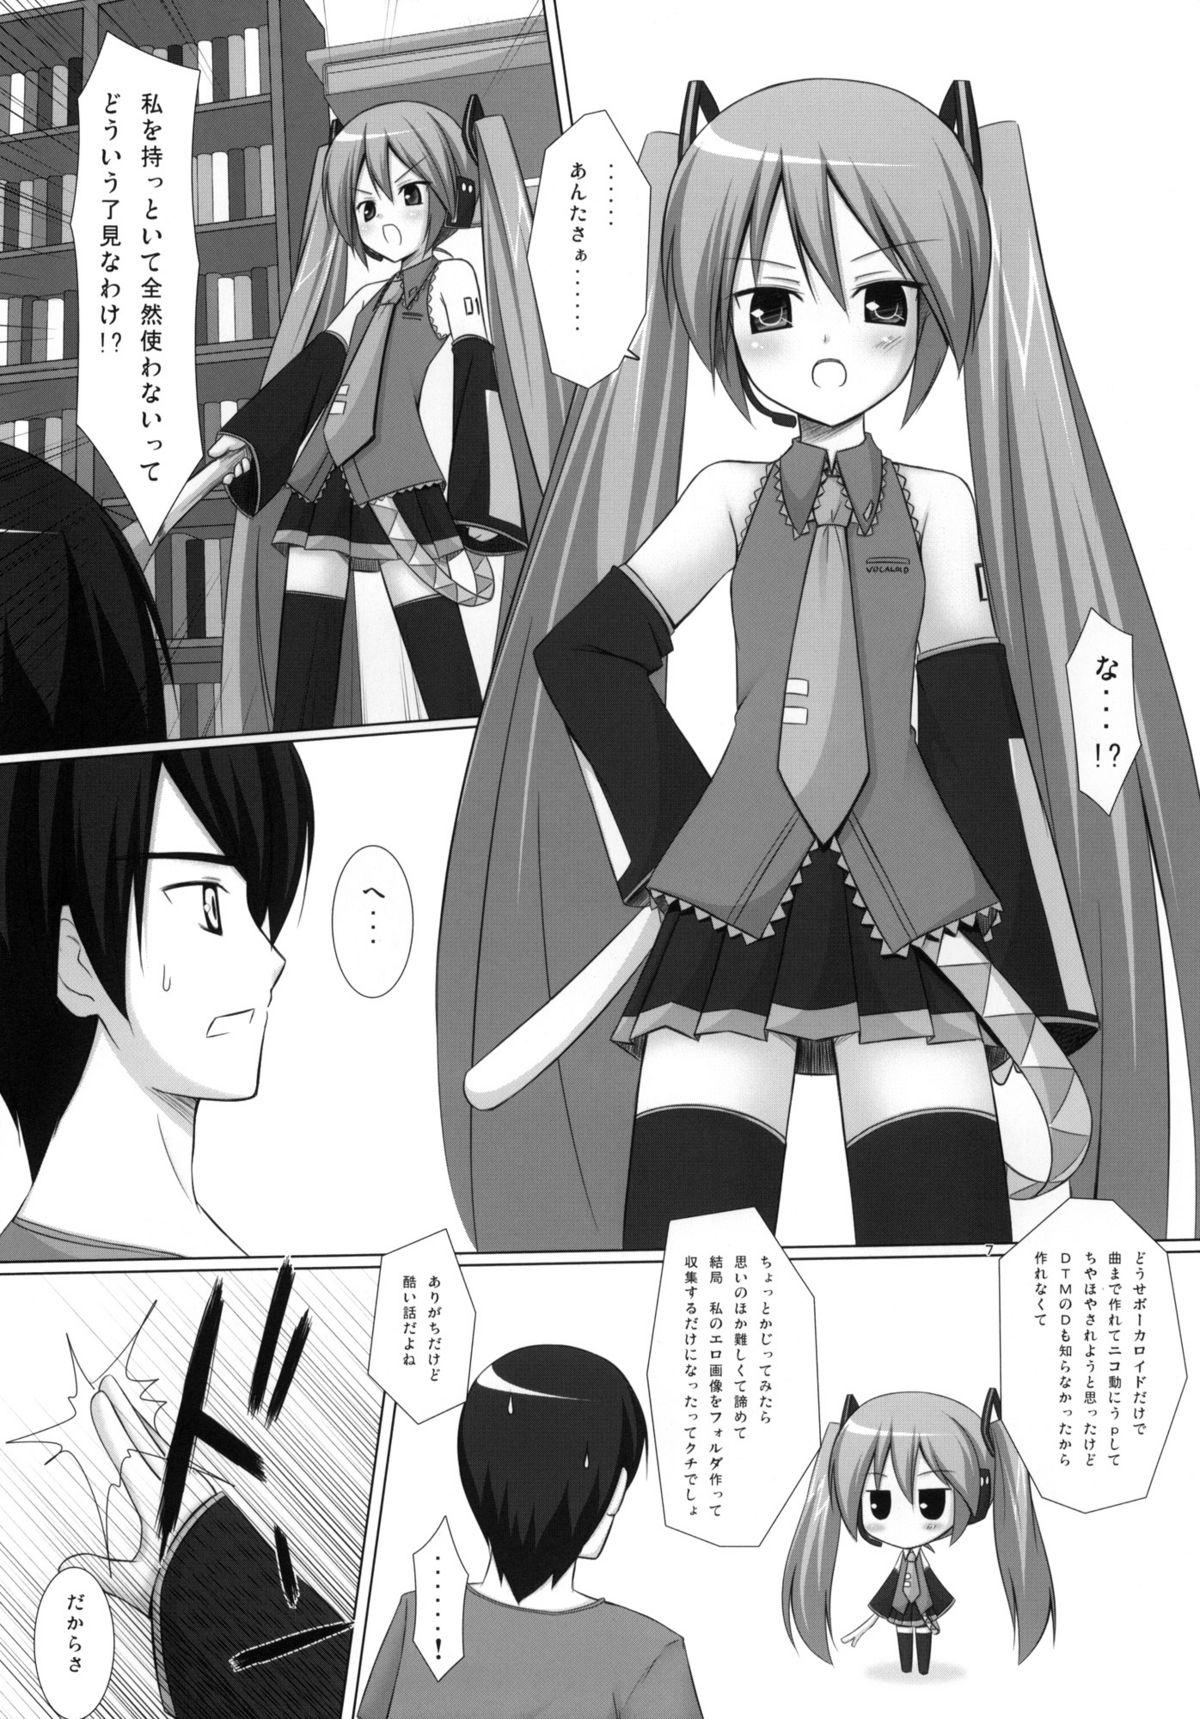 Trimmed Negidaku - Vocaloid Style - Page 6